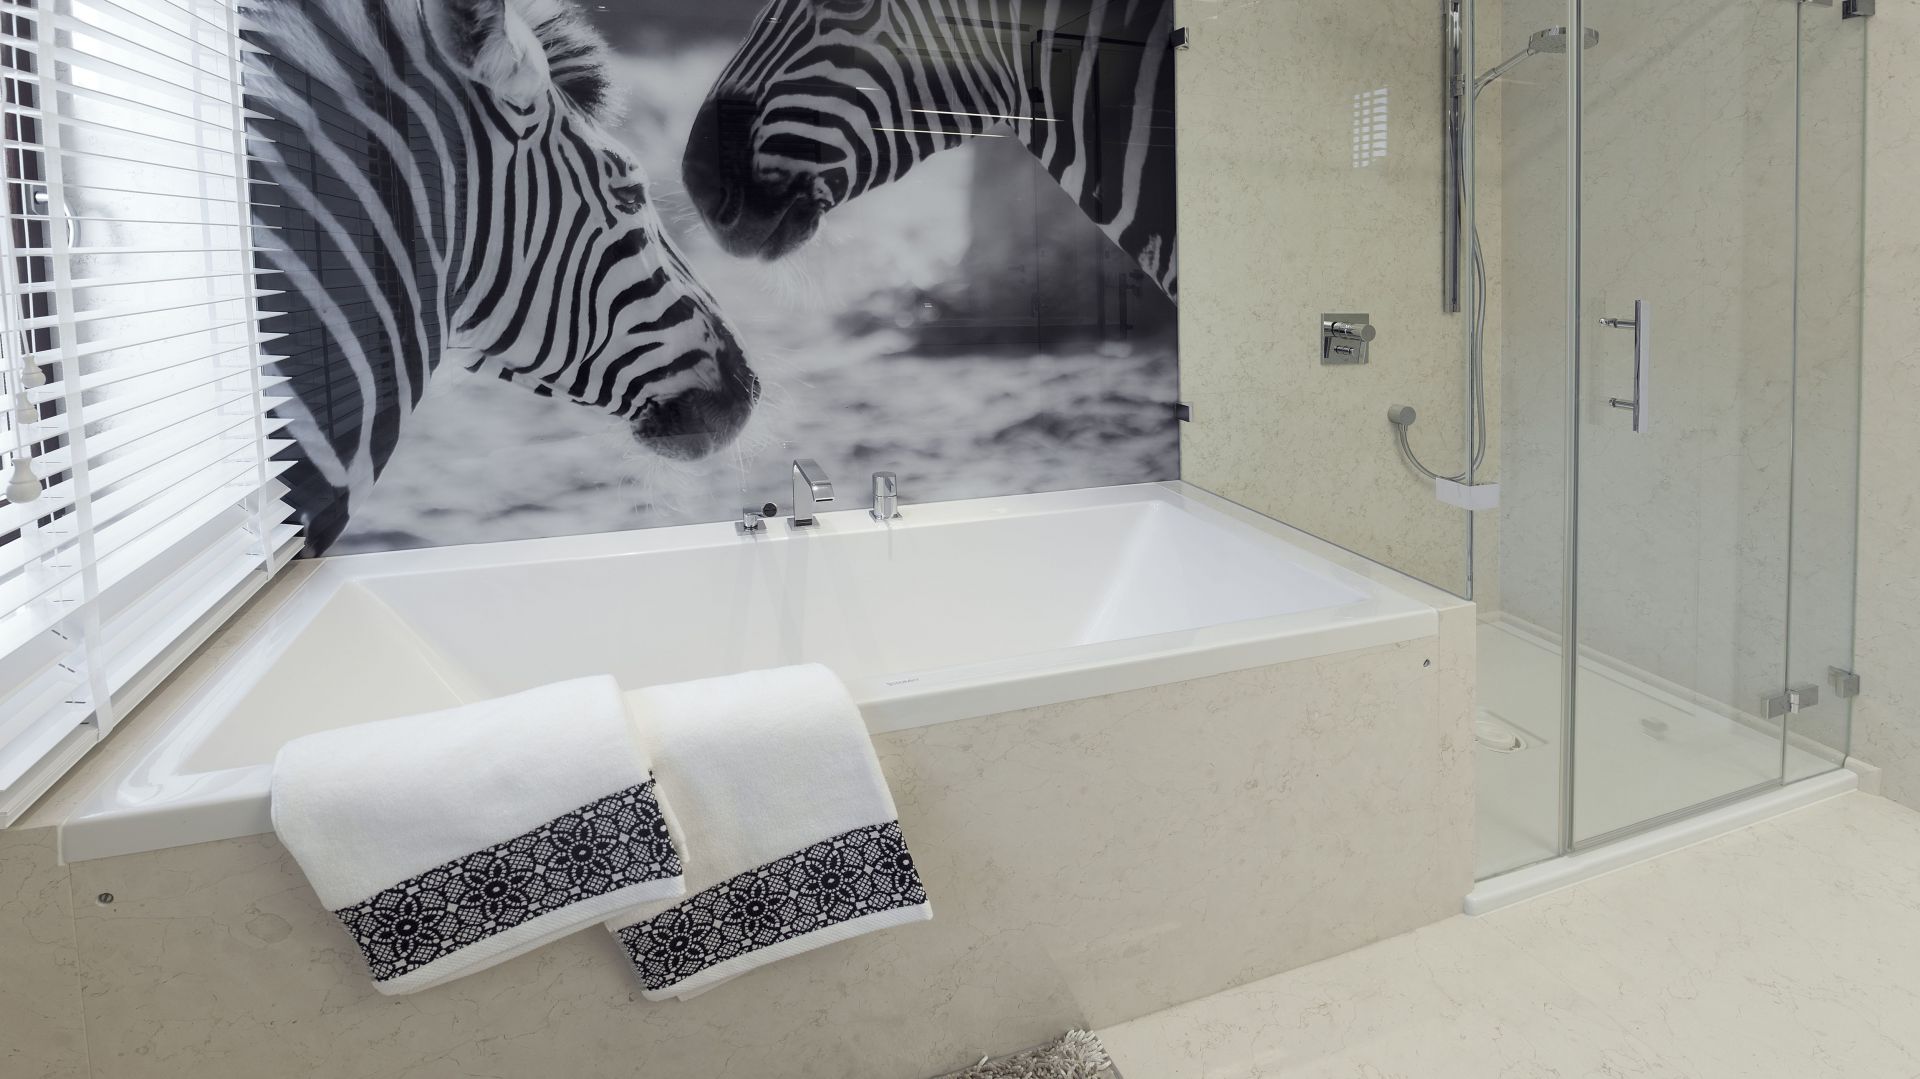 Czarno-biała, nowoczesna łazienka: zobacz gotowy projekt